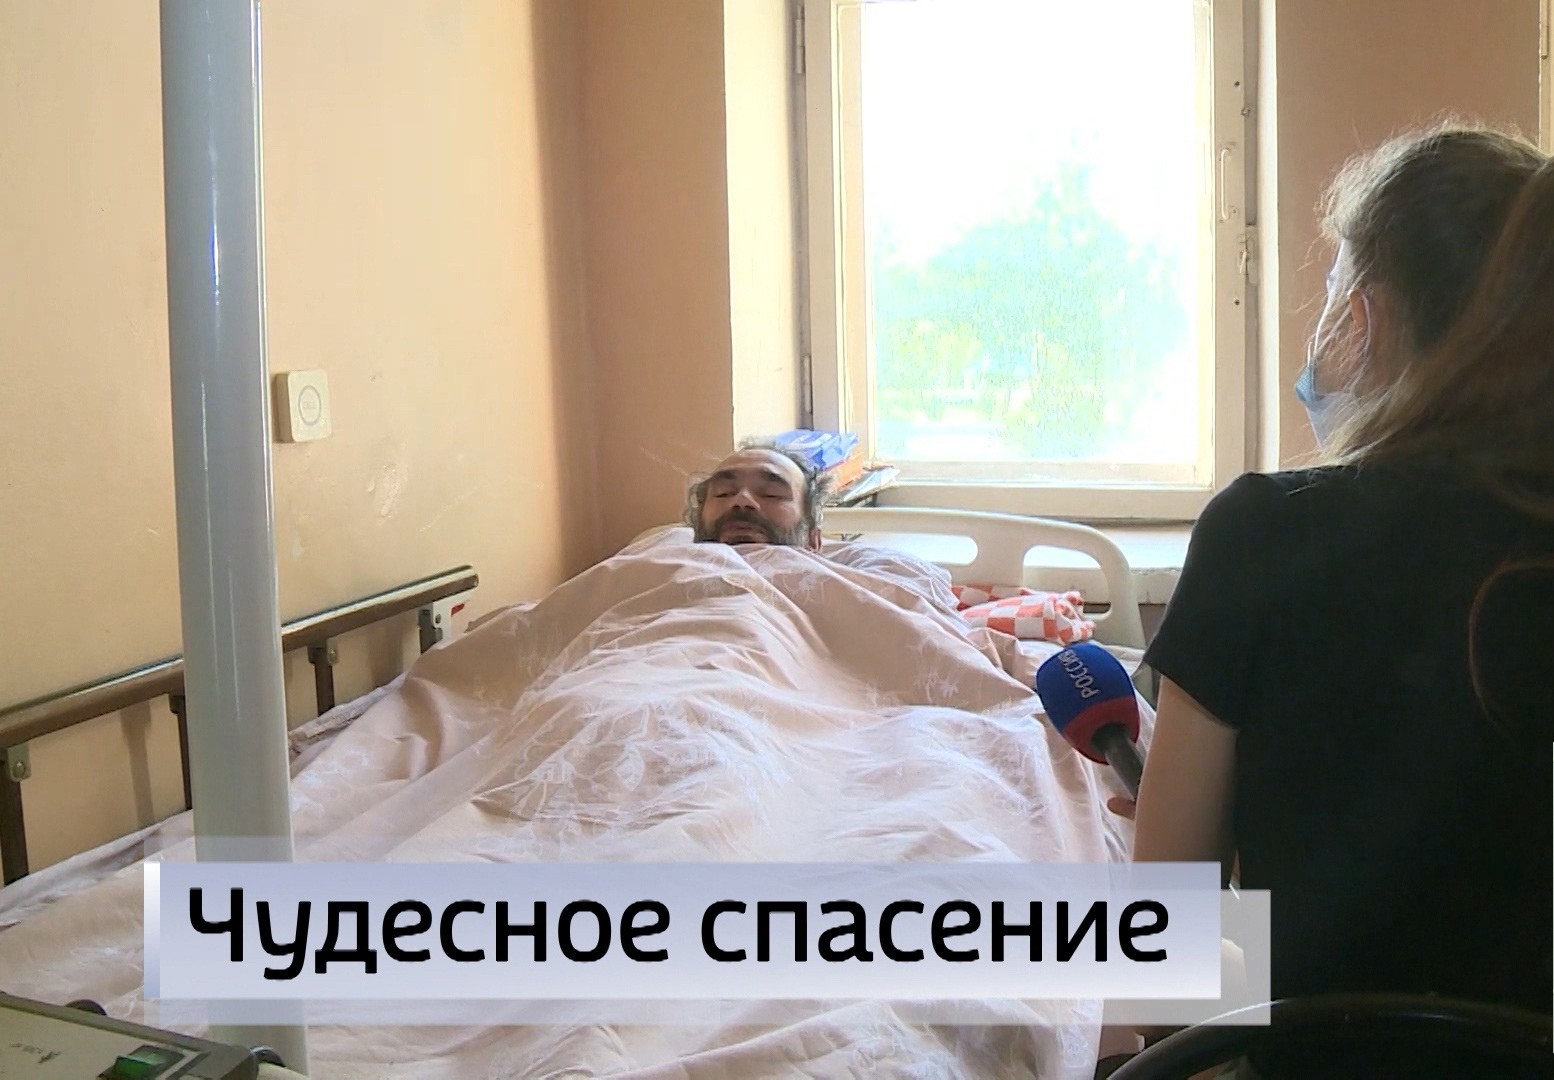 Житель Ставрополя, чья история была опубликована на интернет-ресурсах, вернулся домой